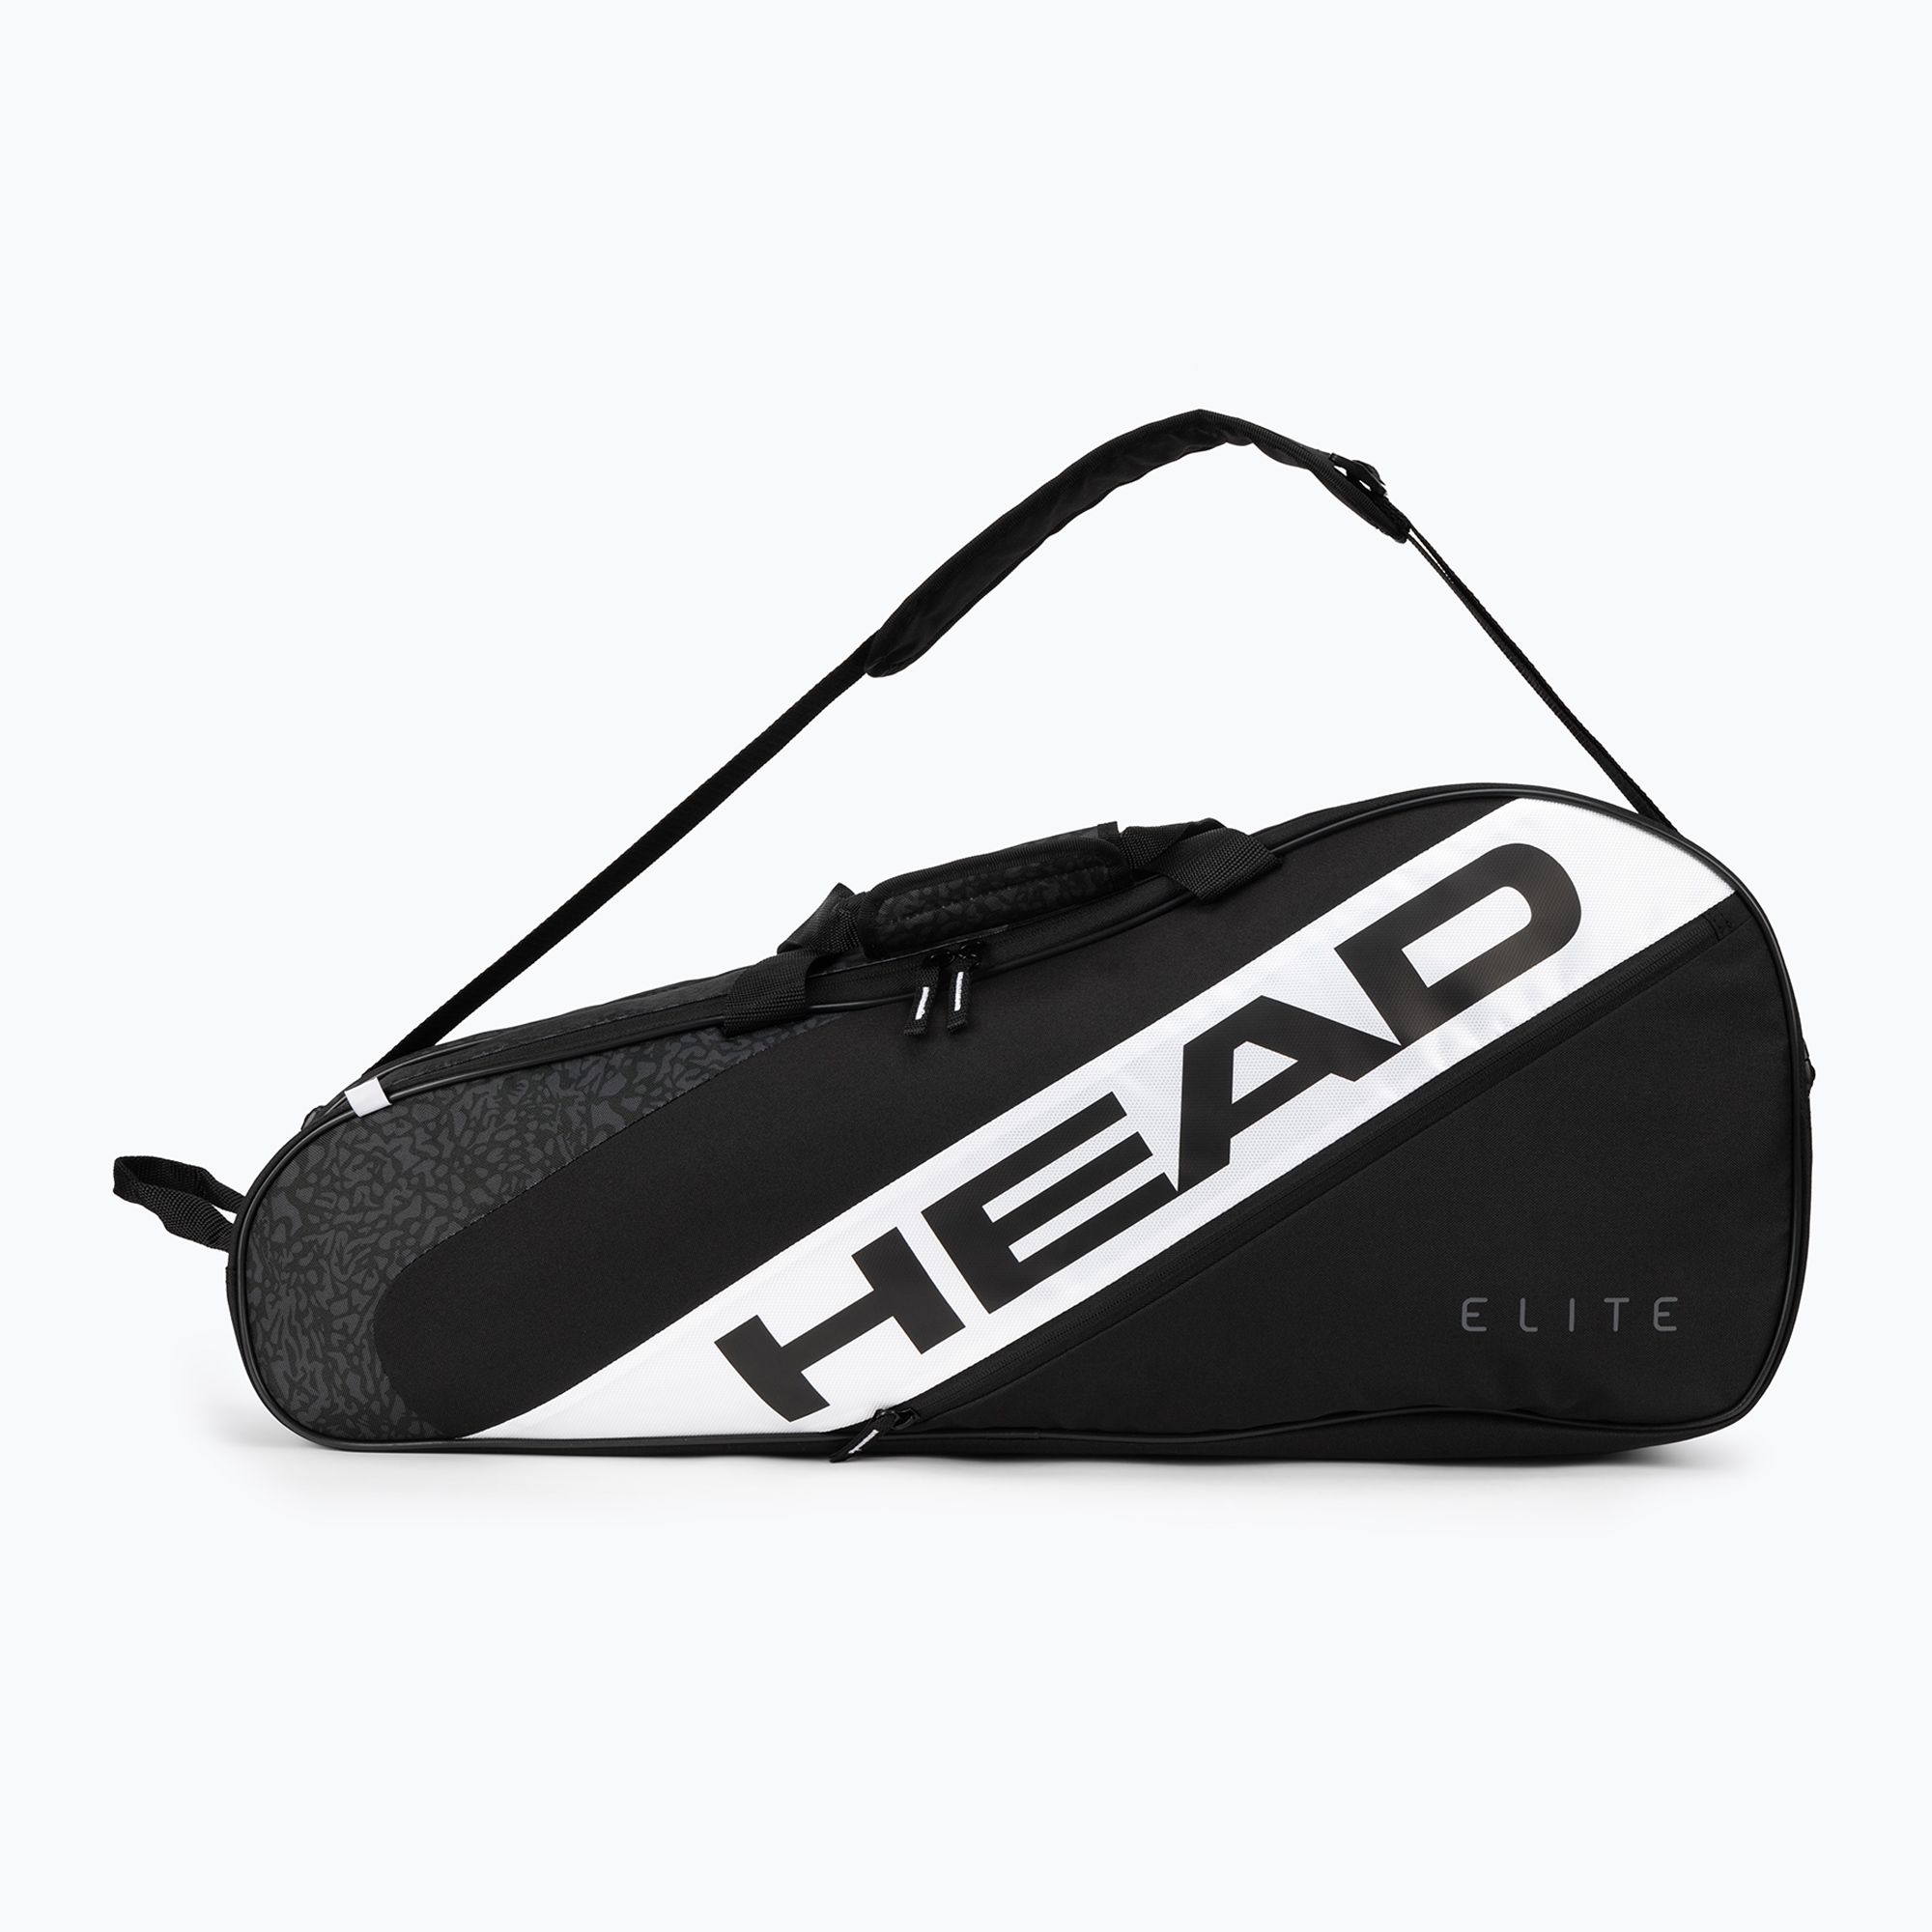 Geantă de tenis HEAD Elite 6R negru 283642